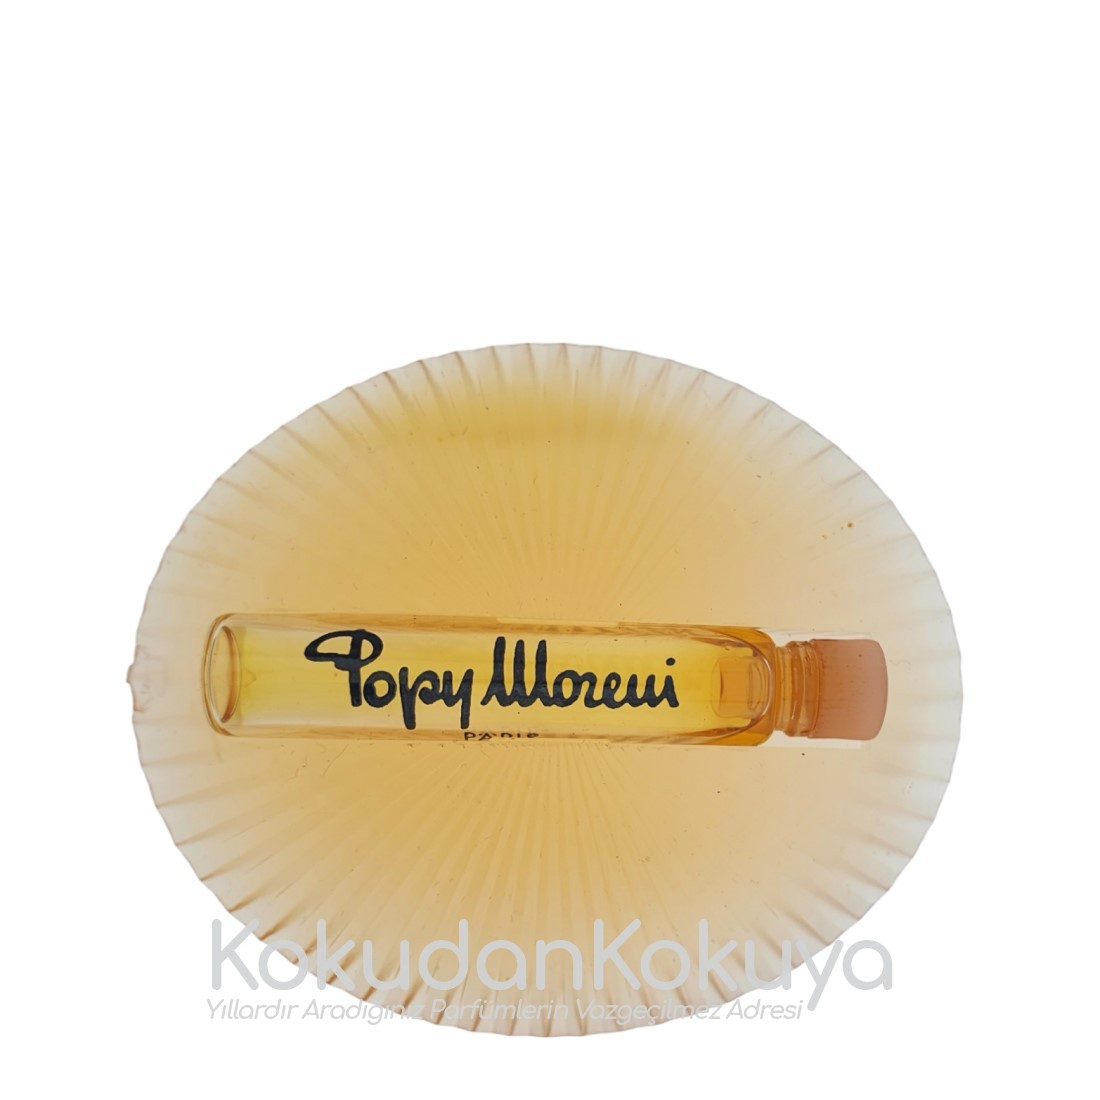 POPY MORENI Classic Women (Vintage) Parfüm Kadın 2ml Minyatür (Mini Perfume) Dökme 